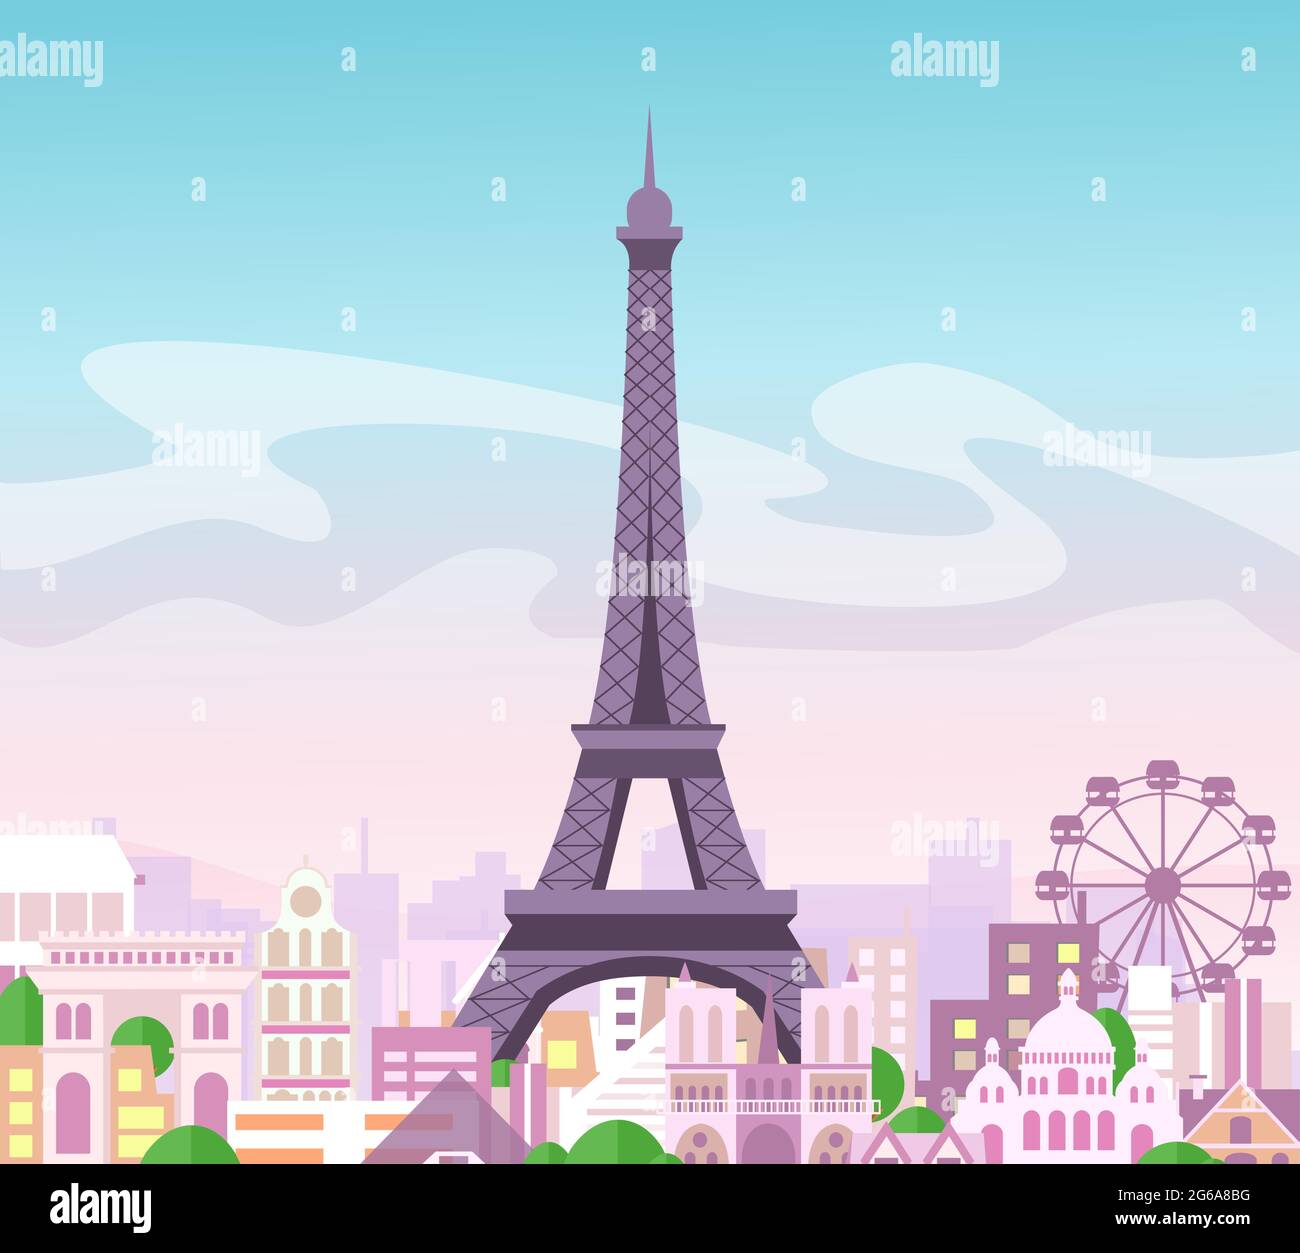 Vektordarstellung der schönen Skyline mit Gebäuden und Bäumen in Pastellfarben. Symbol von Paris in flachem niedlichem Stil mit Stadt und Eiffelturm Stock Vektor